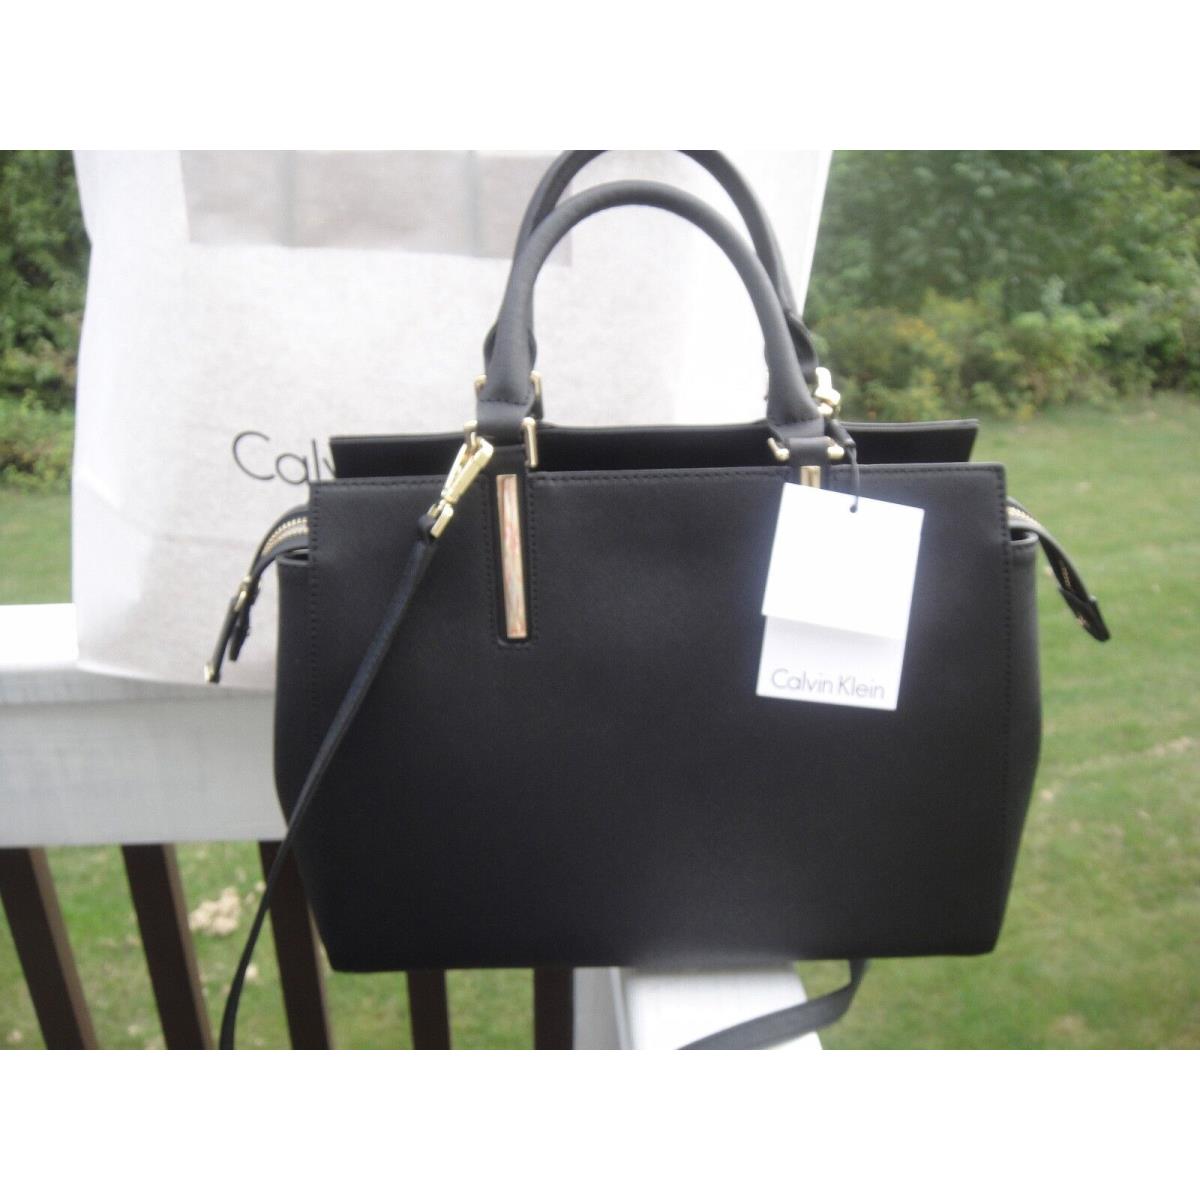 Betreffende Grens Gelach Calvin Klein Saffiano Leather Black Satchel Bag.100%Authentic - Calvin  Klein bag - 700289989224 | Fash Brands